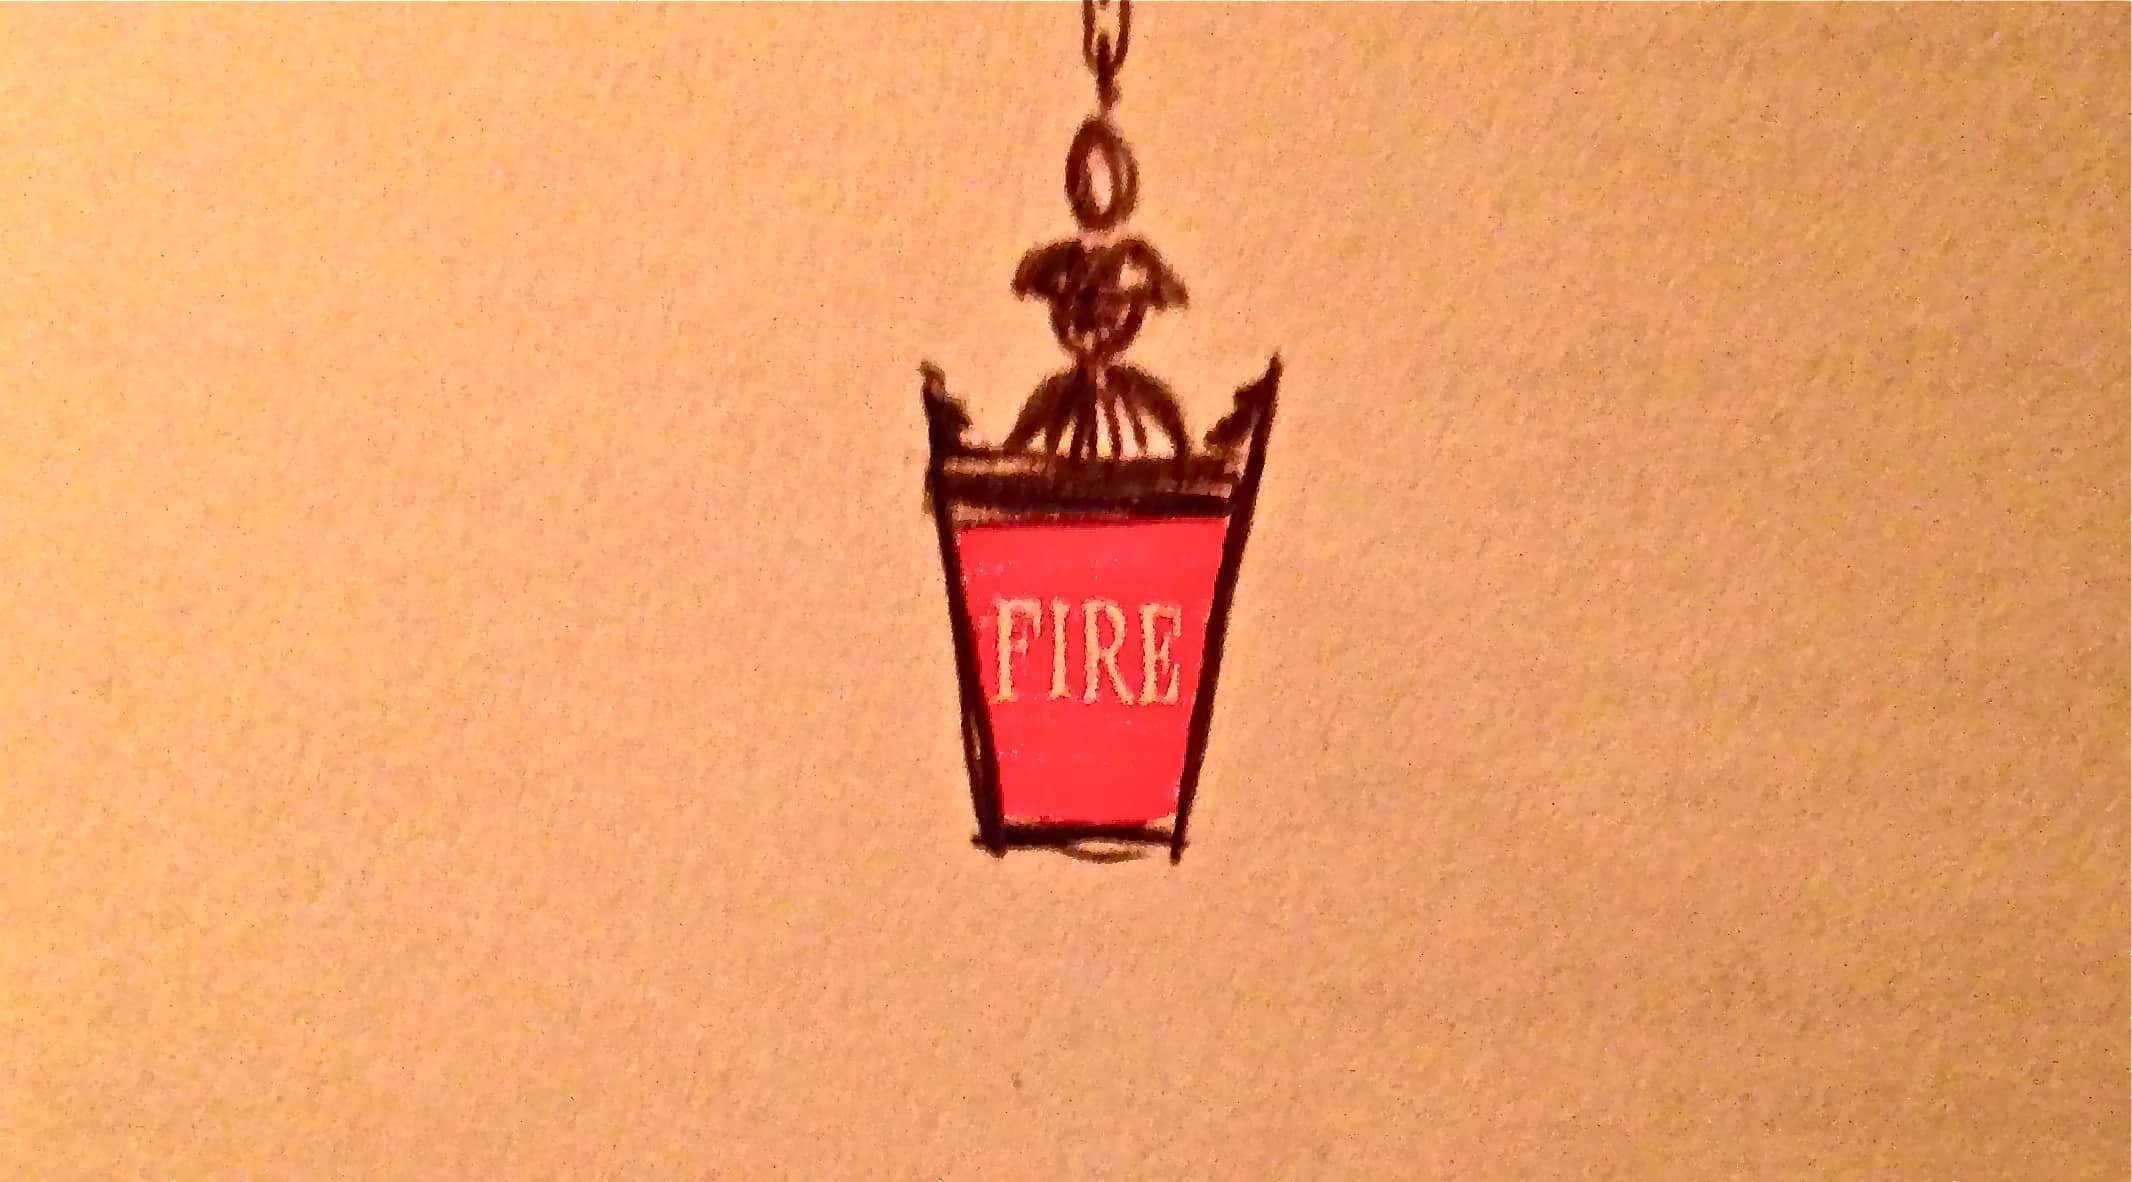 Fire, Firehouse